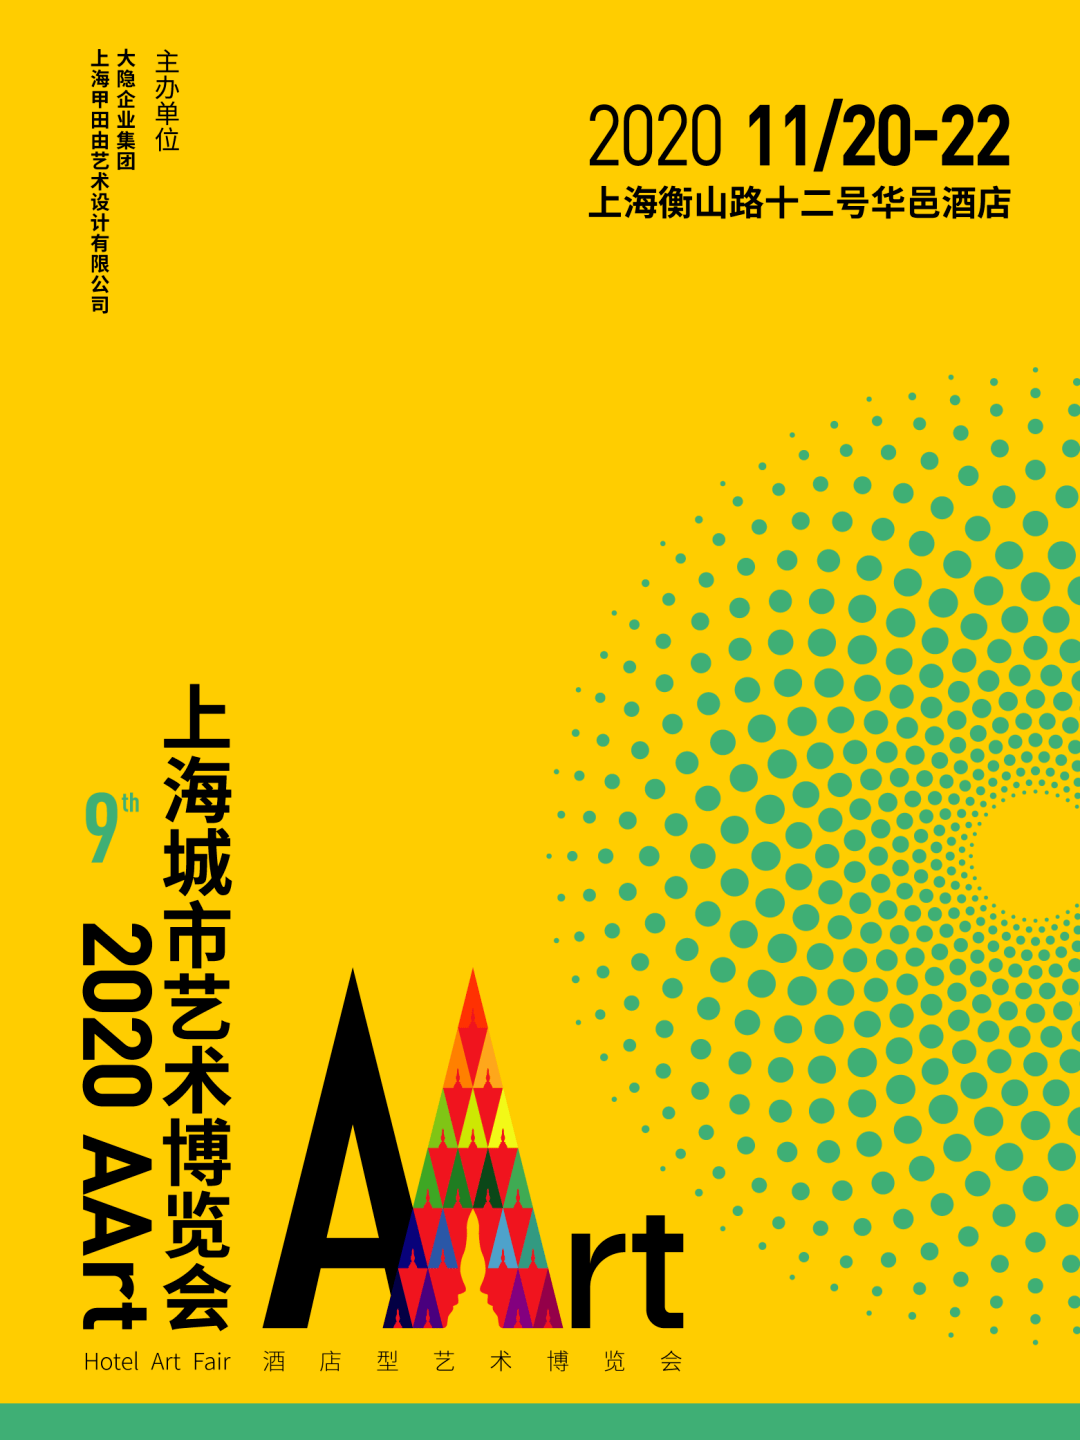 第九届AArt上海城市艺术博览会将于衡山路十二号华邑酒店举办